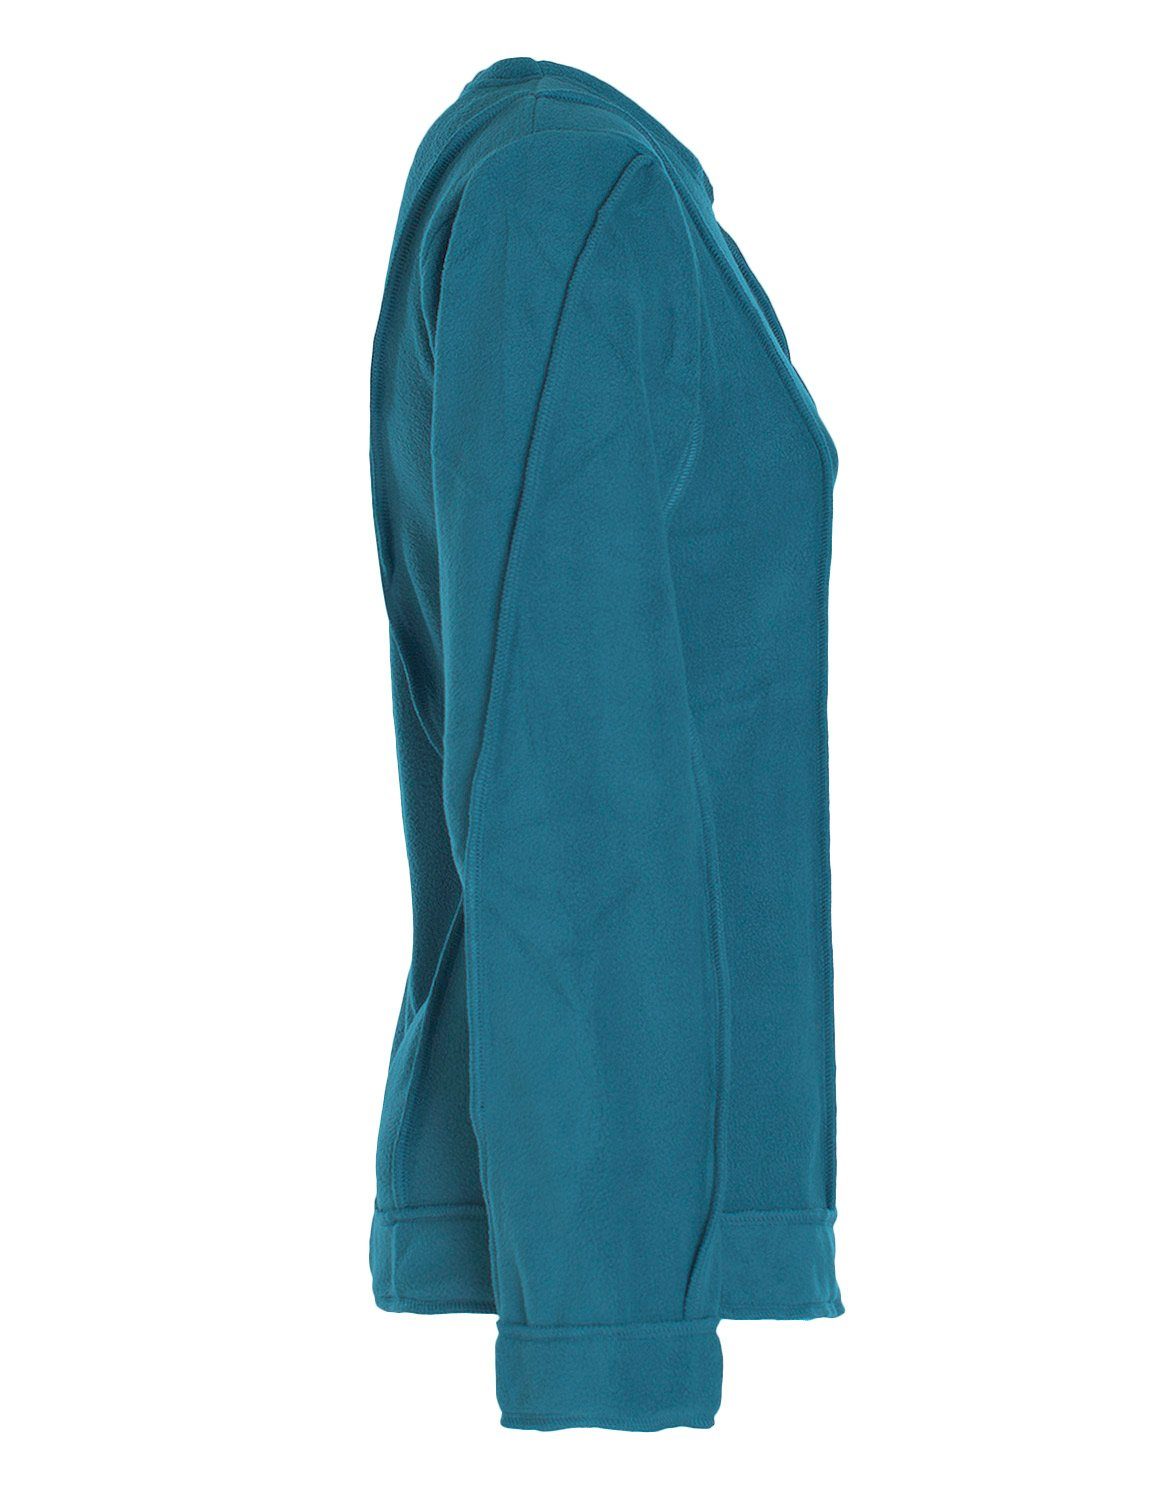 Vishes Style Fleecepullover Winterpullover Eco-Fleece warmer Damen Patchwork Fleecepullover türkis